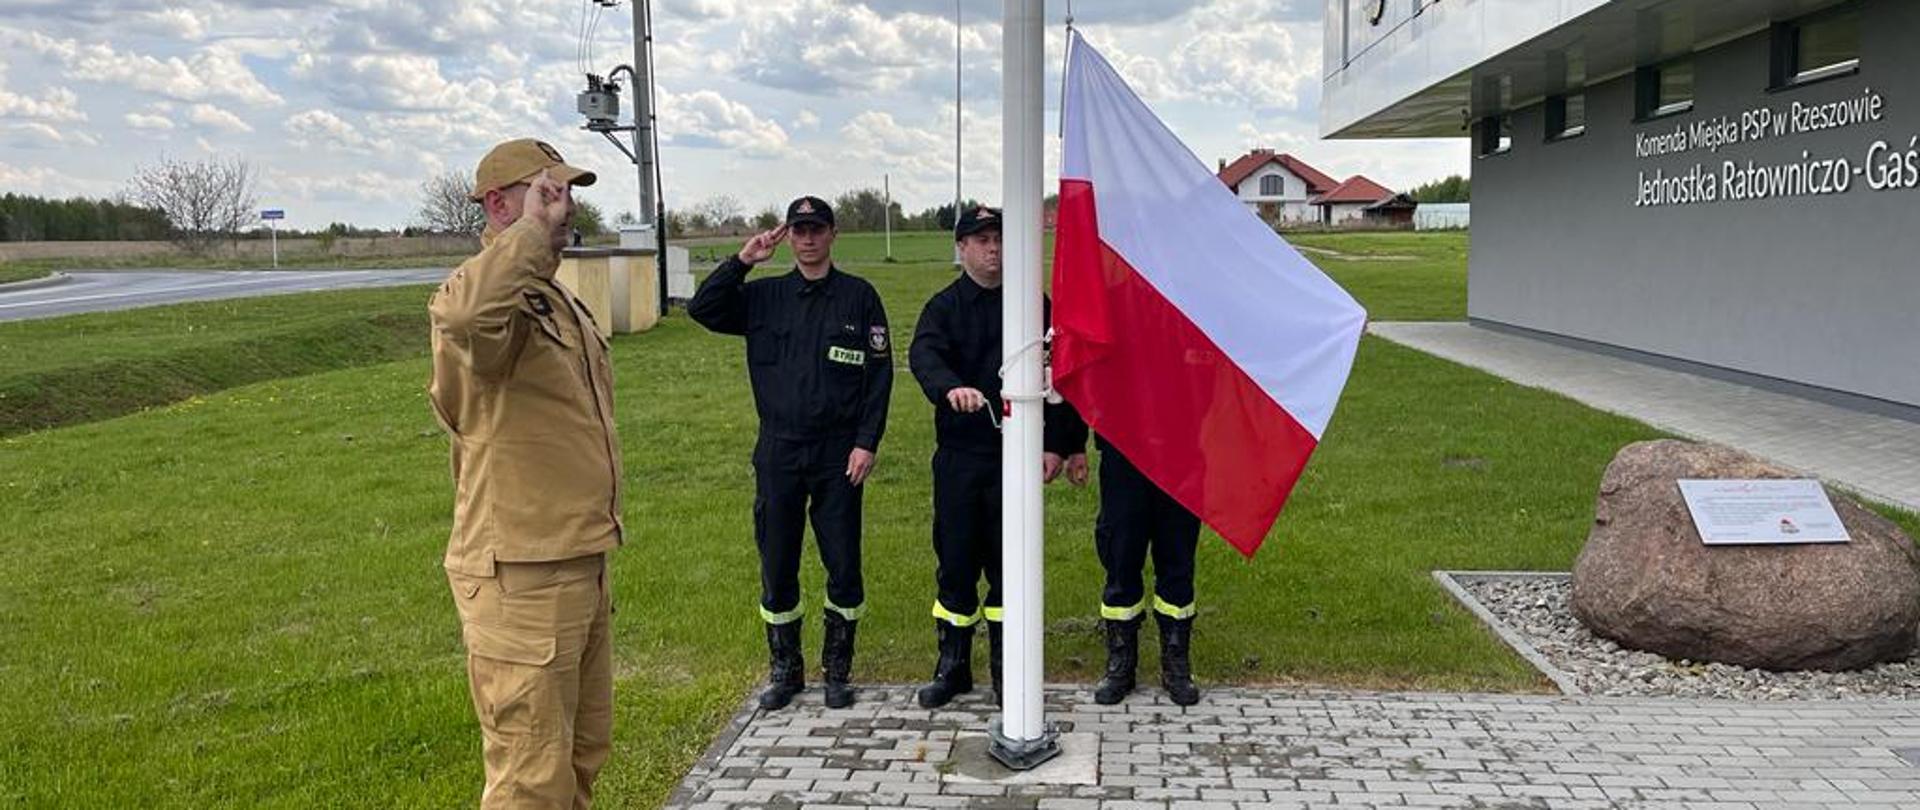 Zdjęcie przedstawia czterech strażaków stojących przy maszcie. Dwóch z nich salutuje, natomiast jeden przy użyciu korby podnosi Flagę Państwową na maszt. W tle widoczny jest budynek Jednostki Ratowniczo-Gaśniczej nr 3 w Rzeszowie.